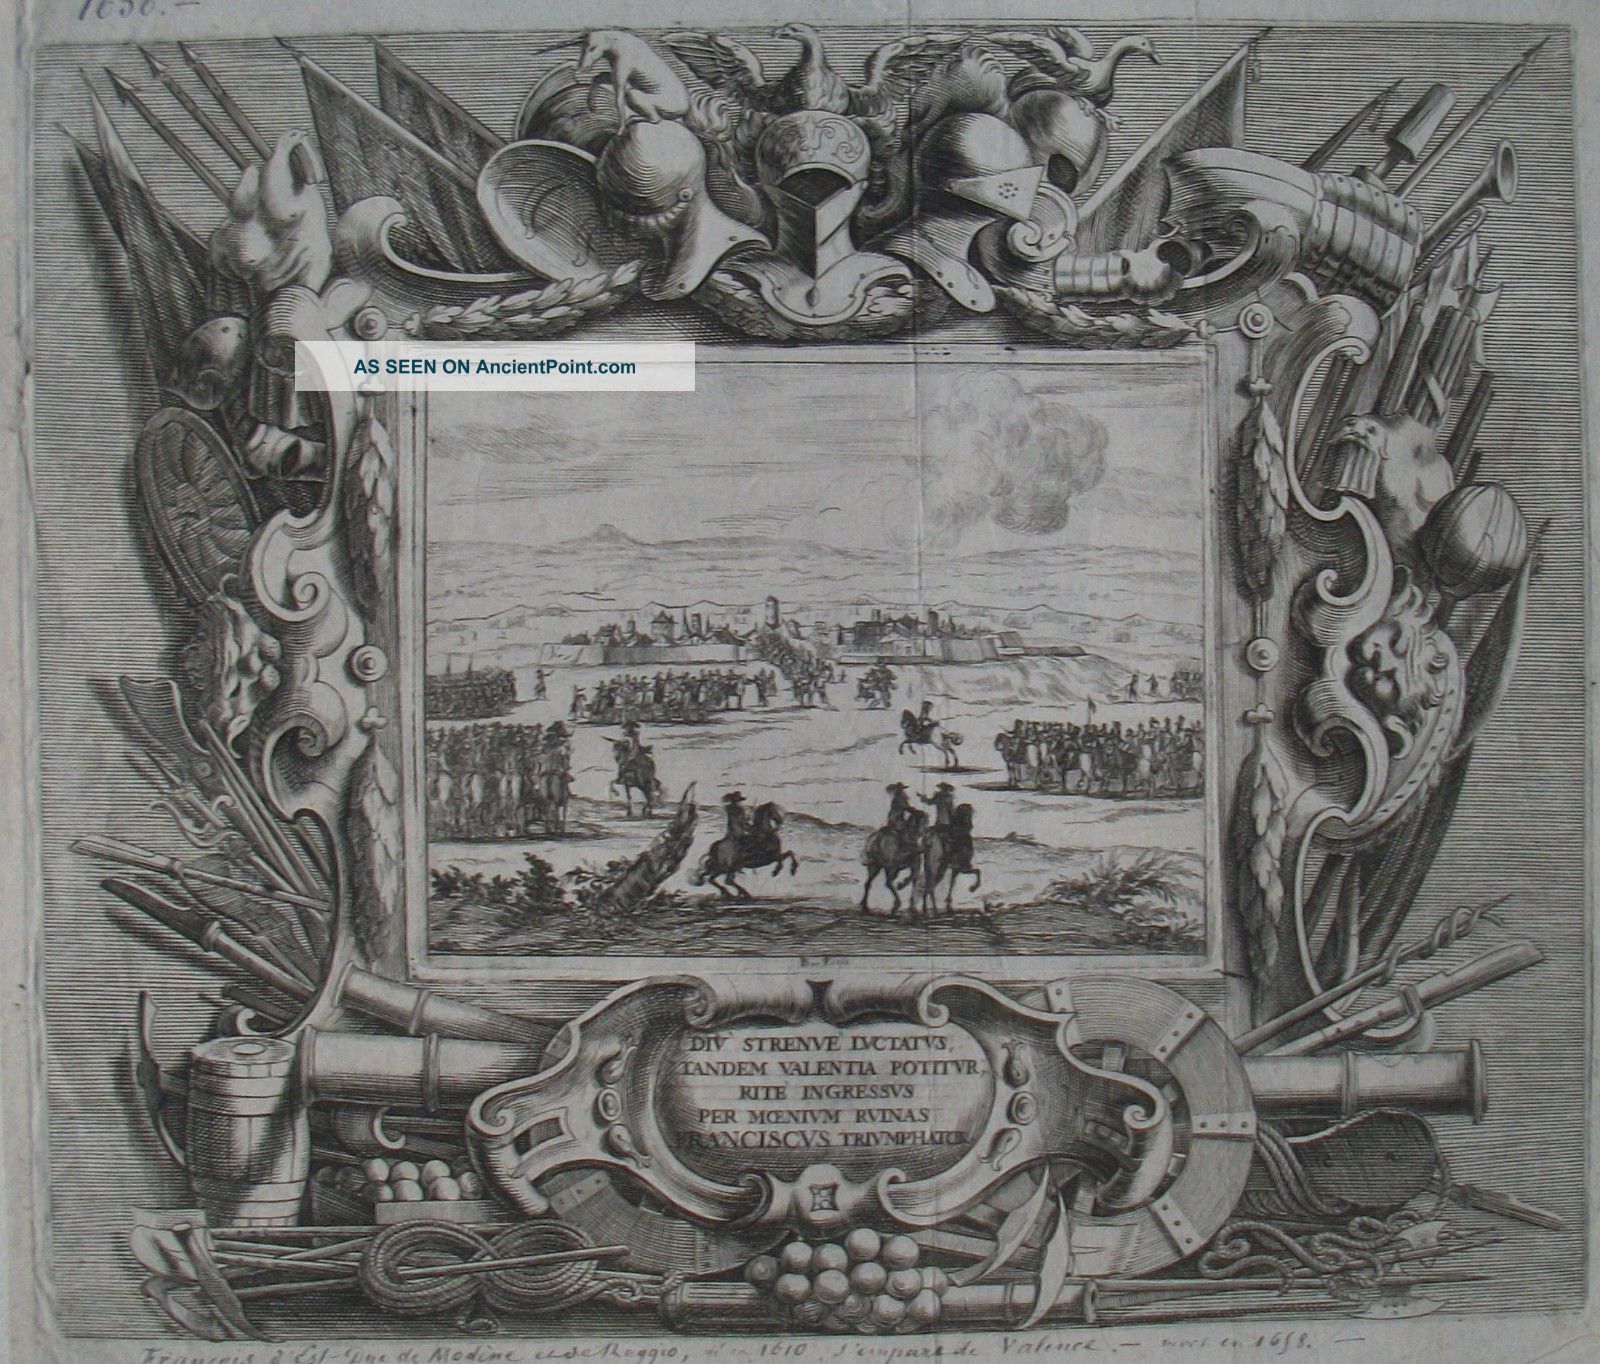 Fançois D ' Est Duc De Modène Et De Reggio - Bartholomé FÉnice - 1656 Near Eastern photo